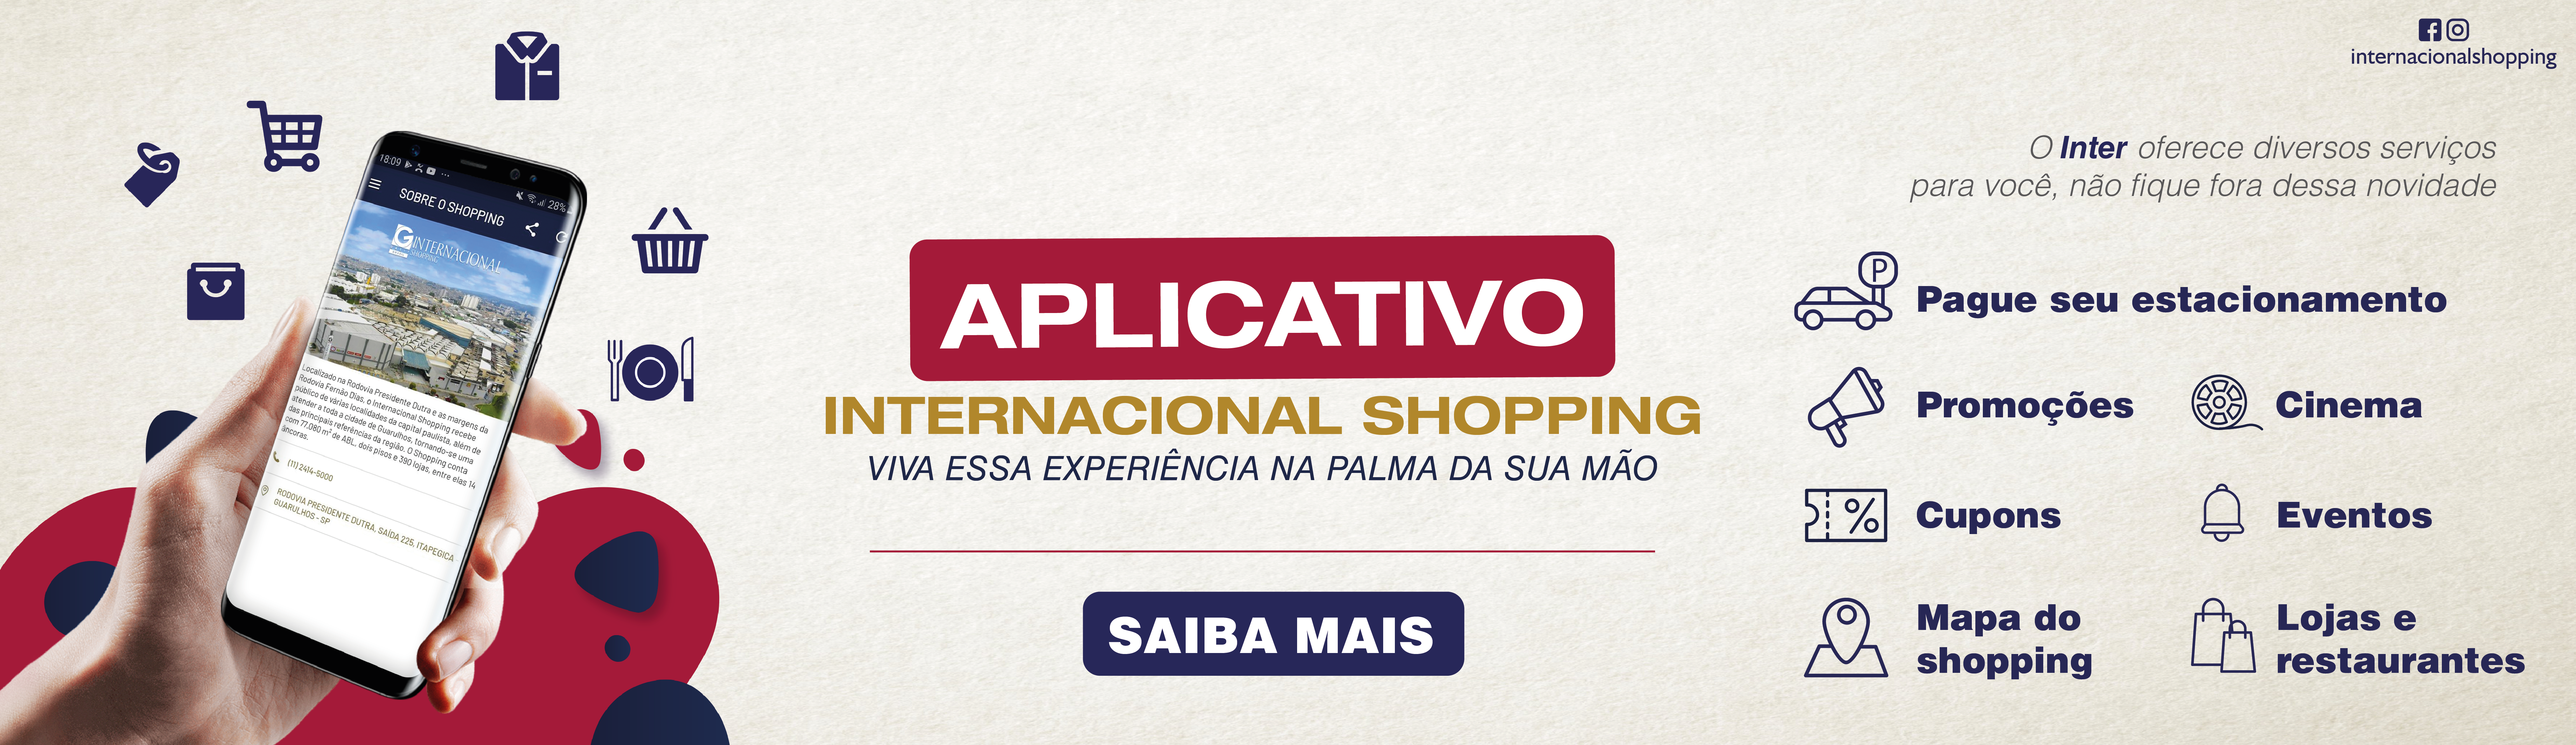 Aplicativo Internacional Shopping